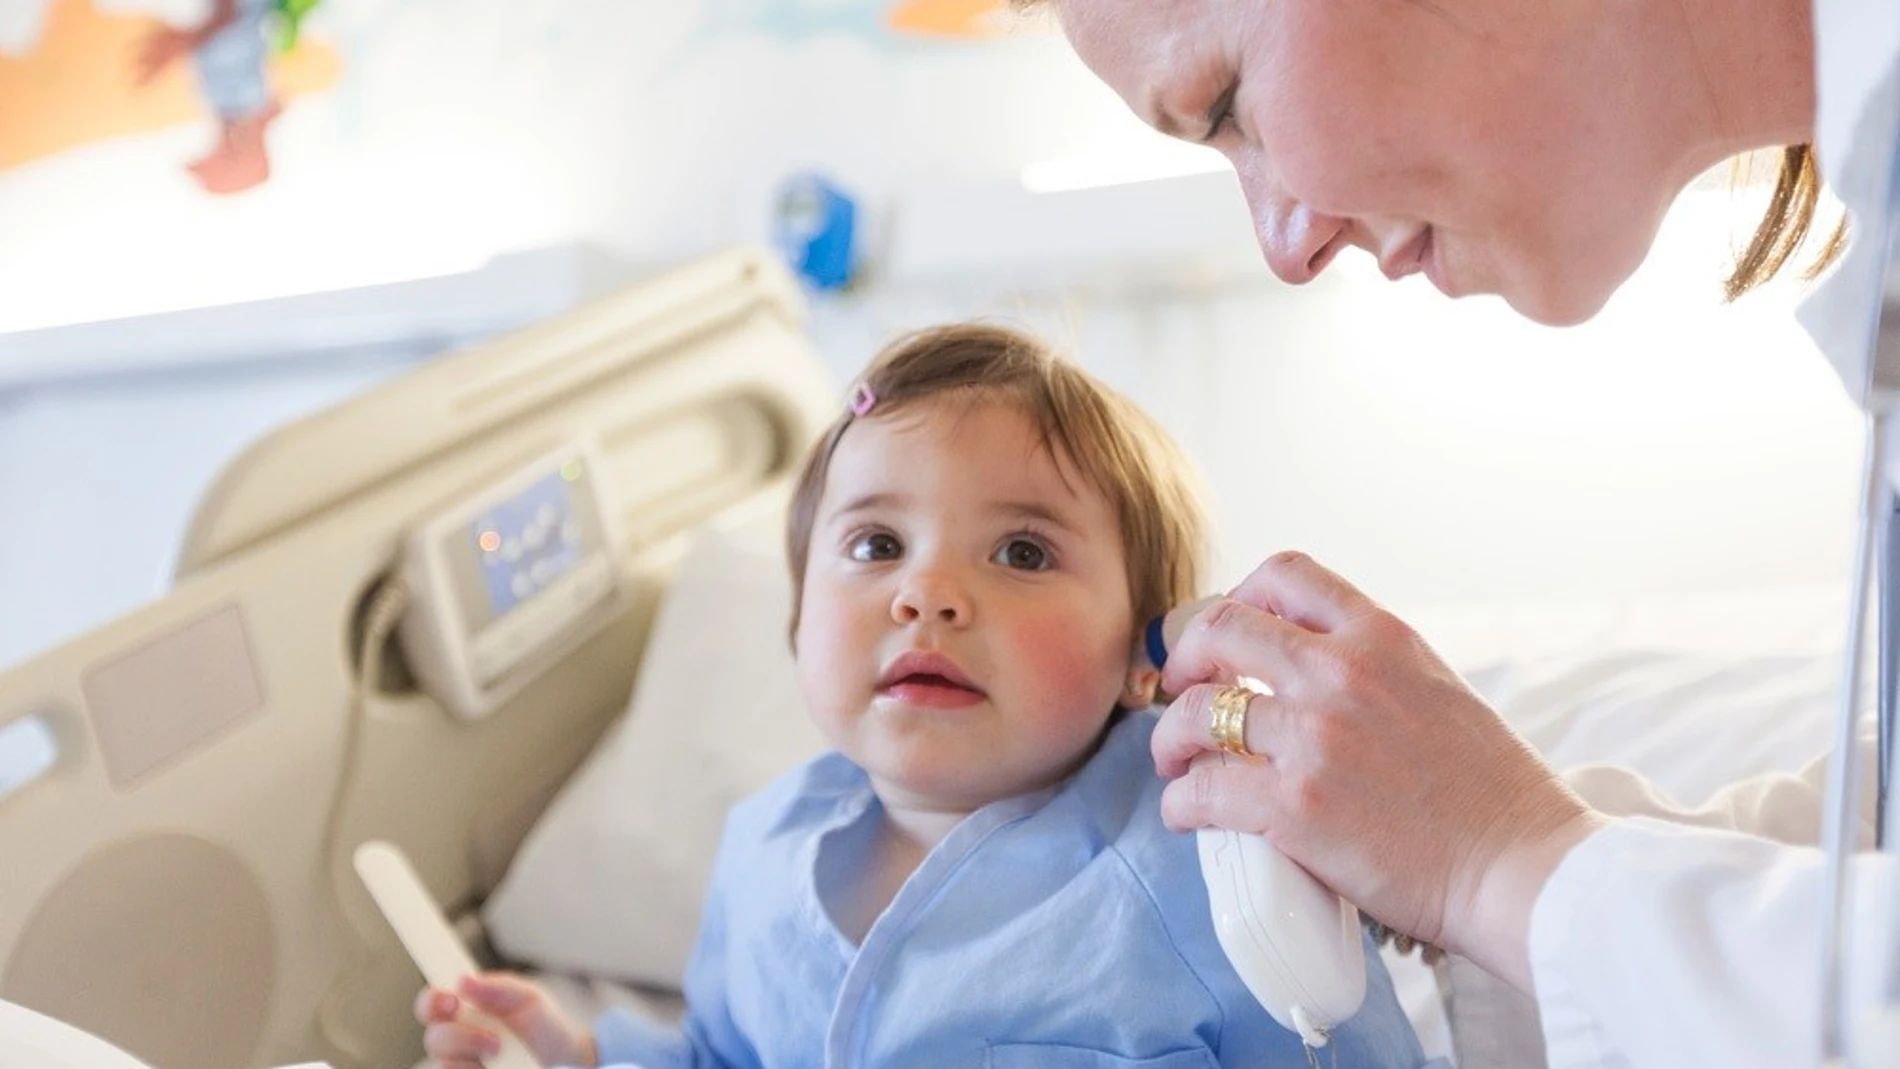 El Hospital de Dénia activa un plan de contingencia en pediatría ante el aumento de niños con bronquiolitis